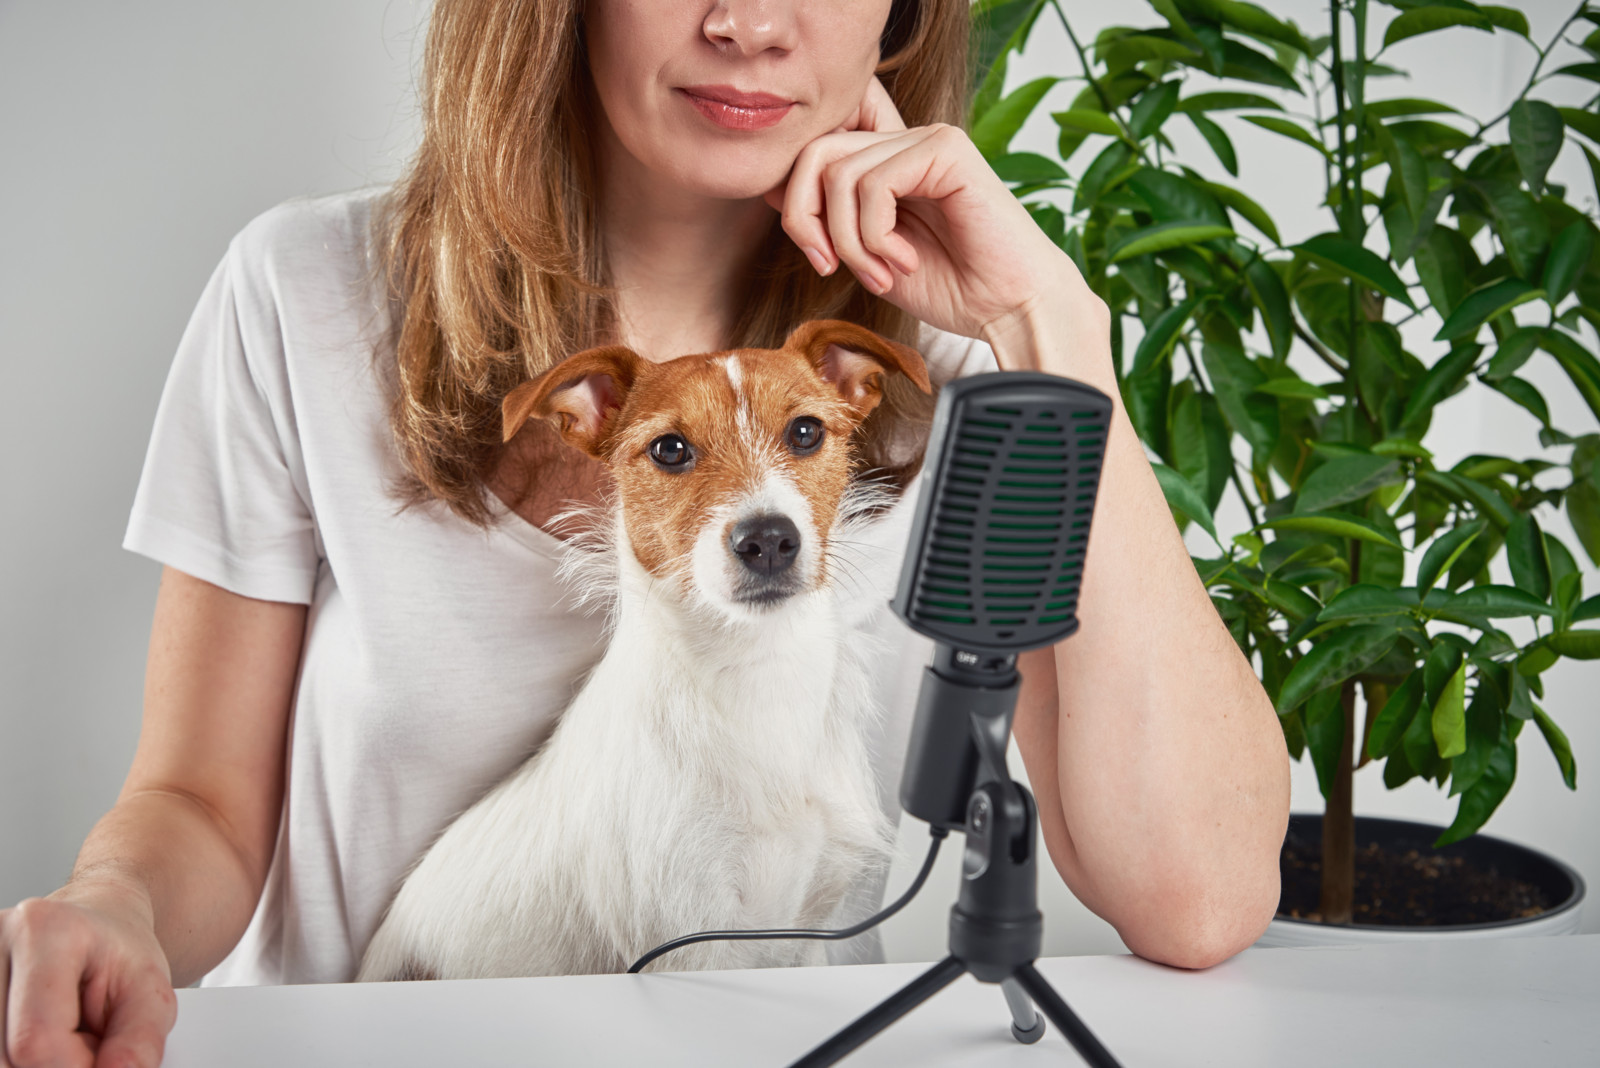 Geschichten aus dem Praxisalltag, aber auch handfeste Hilfestellung für Tierhalter: Podcasts sind vielseitig und interessieren viele Praktiker.